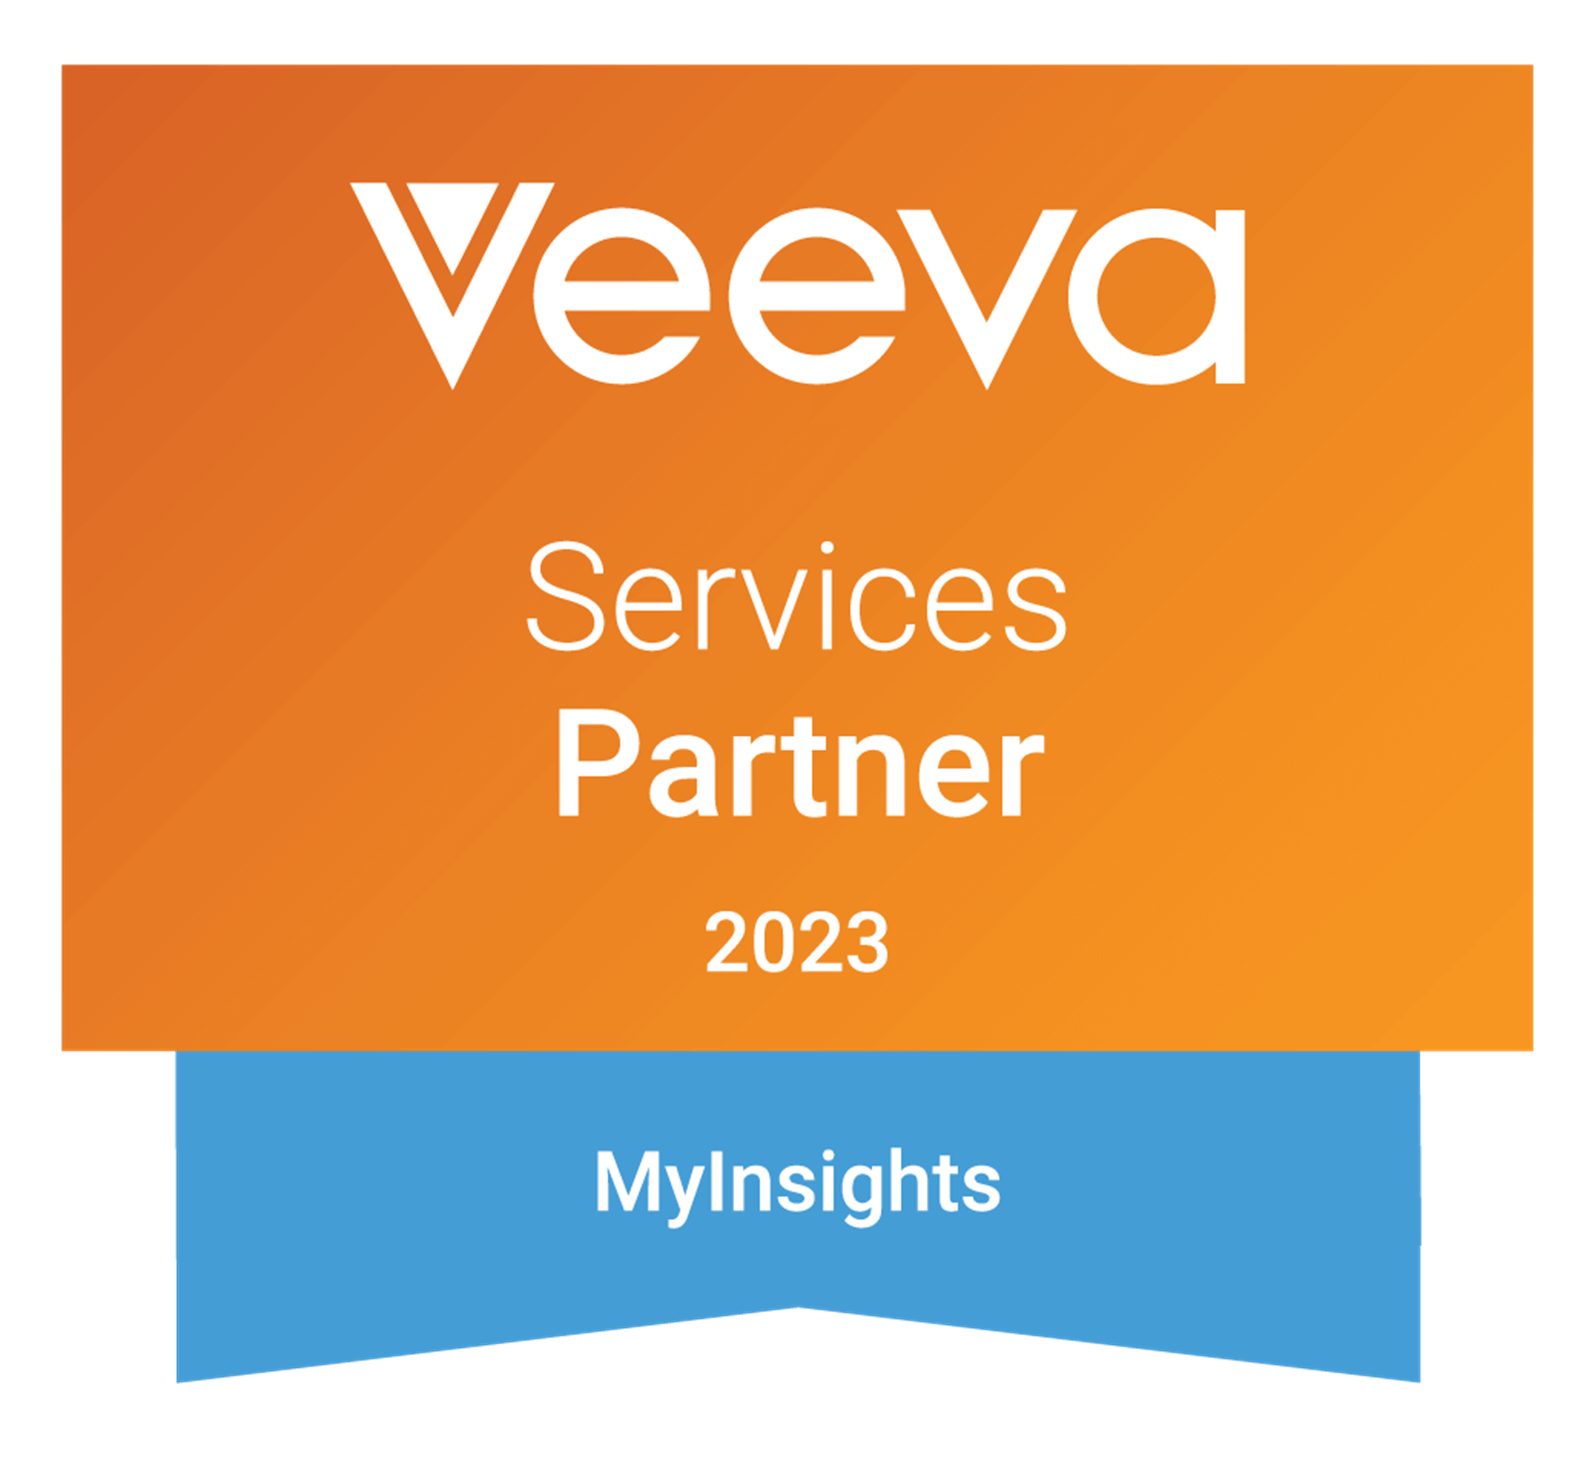 Veeva Services Partner 2023. MyInsights logo